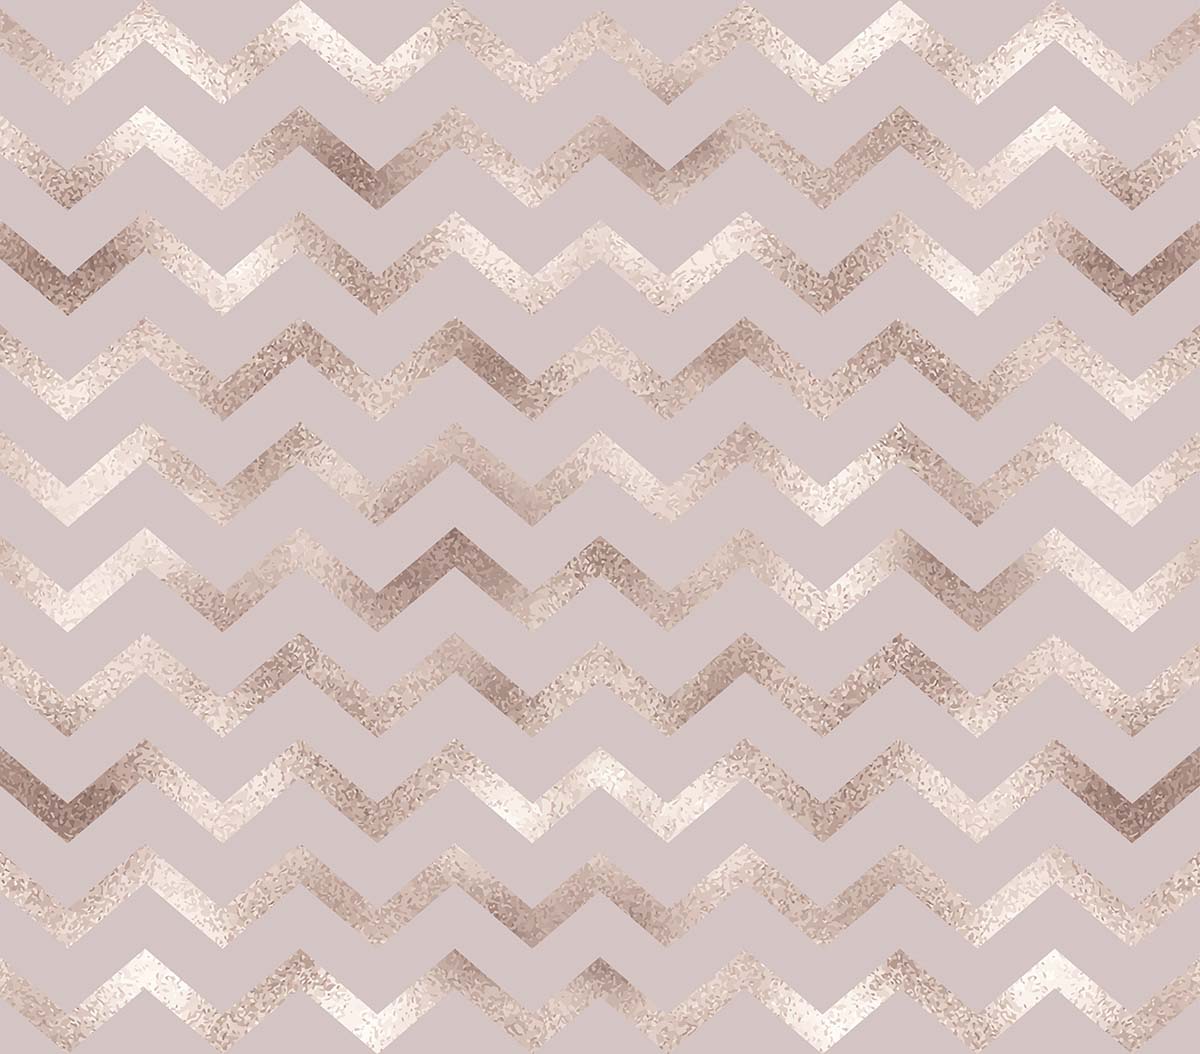 A pink chevron pattern